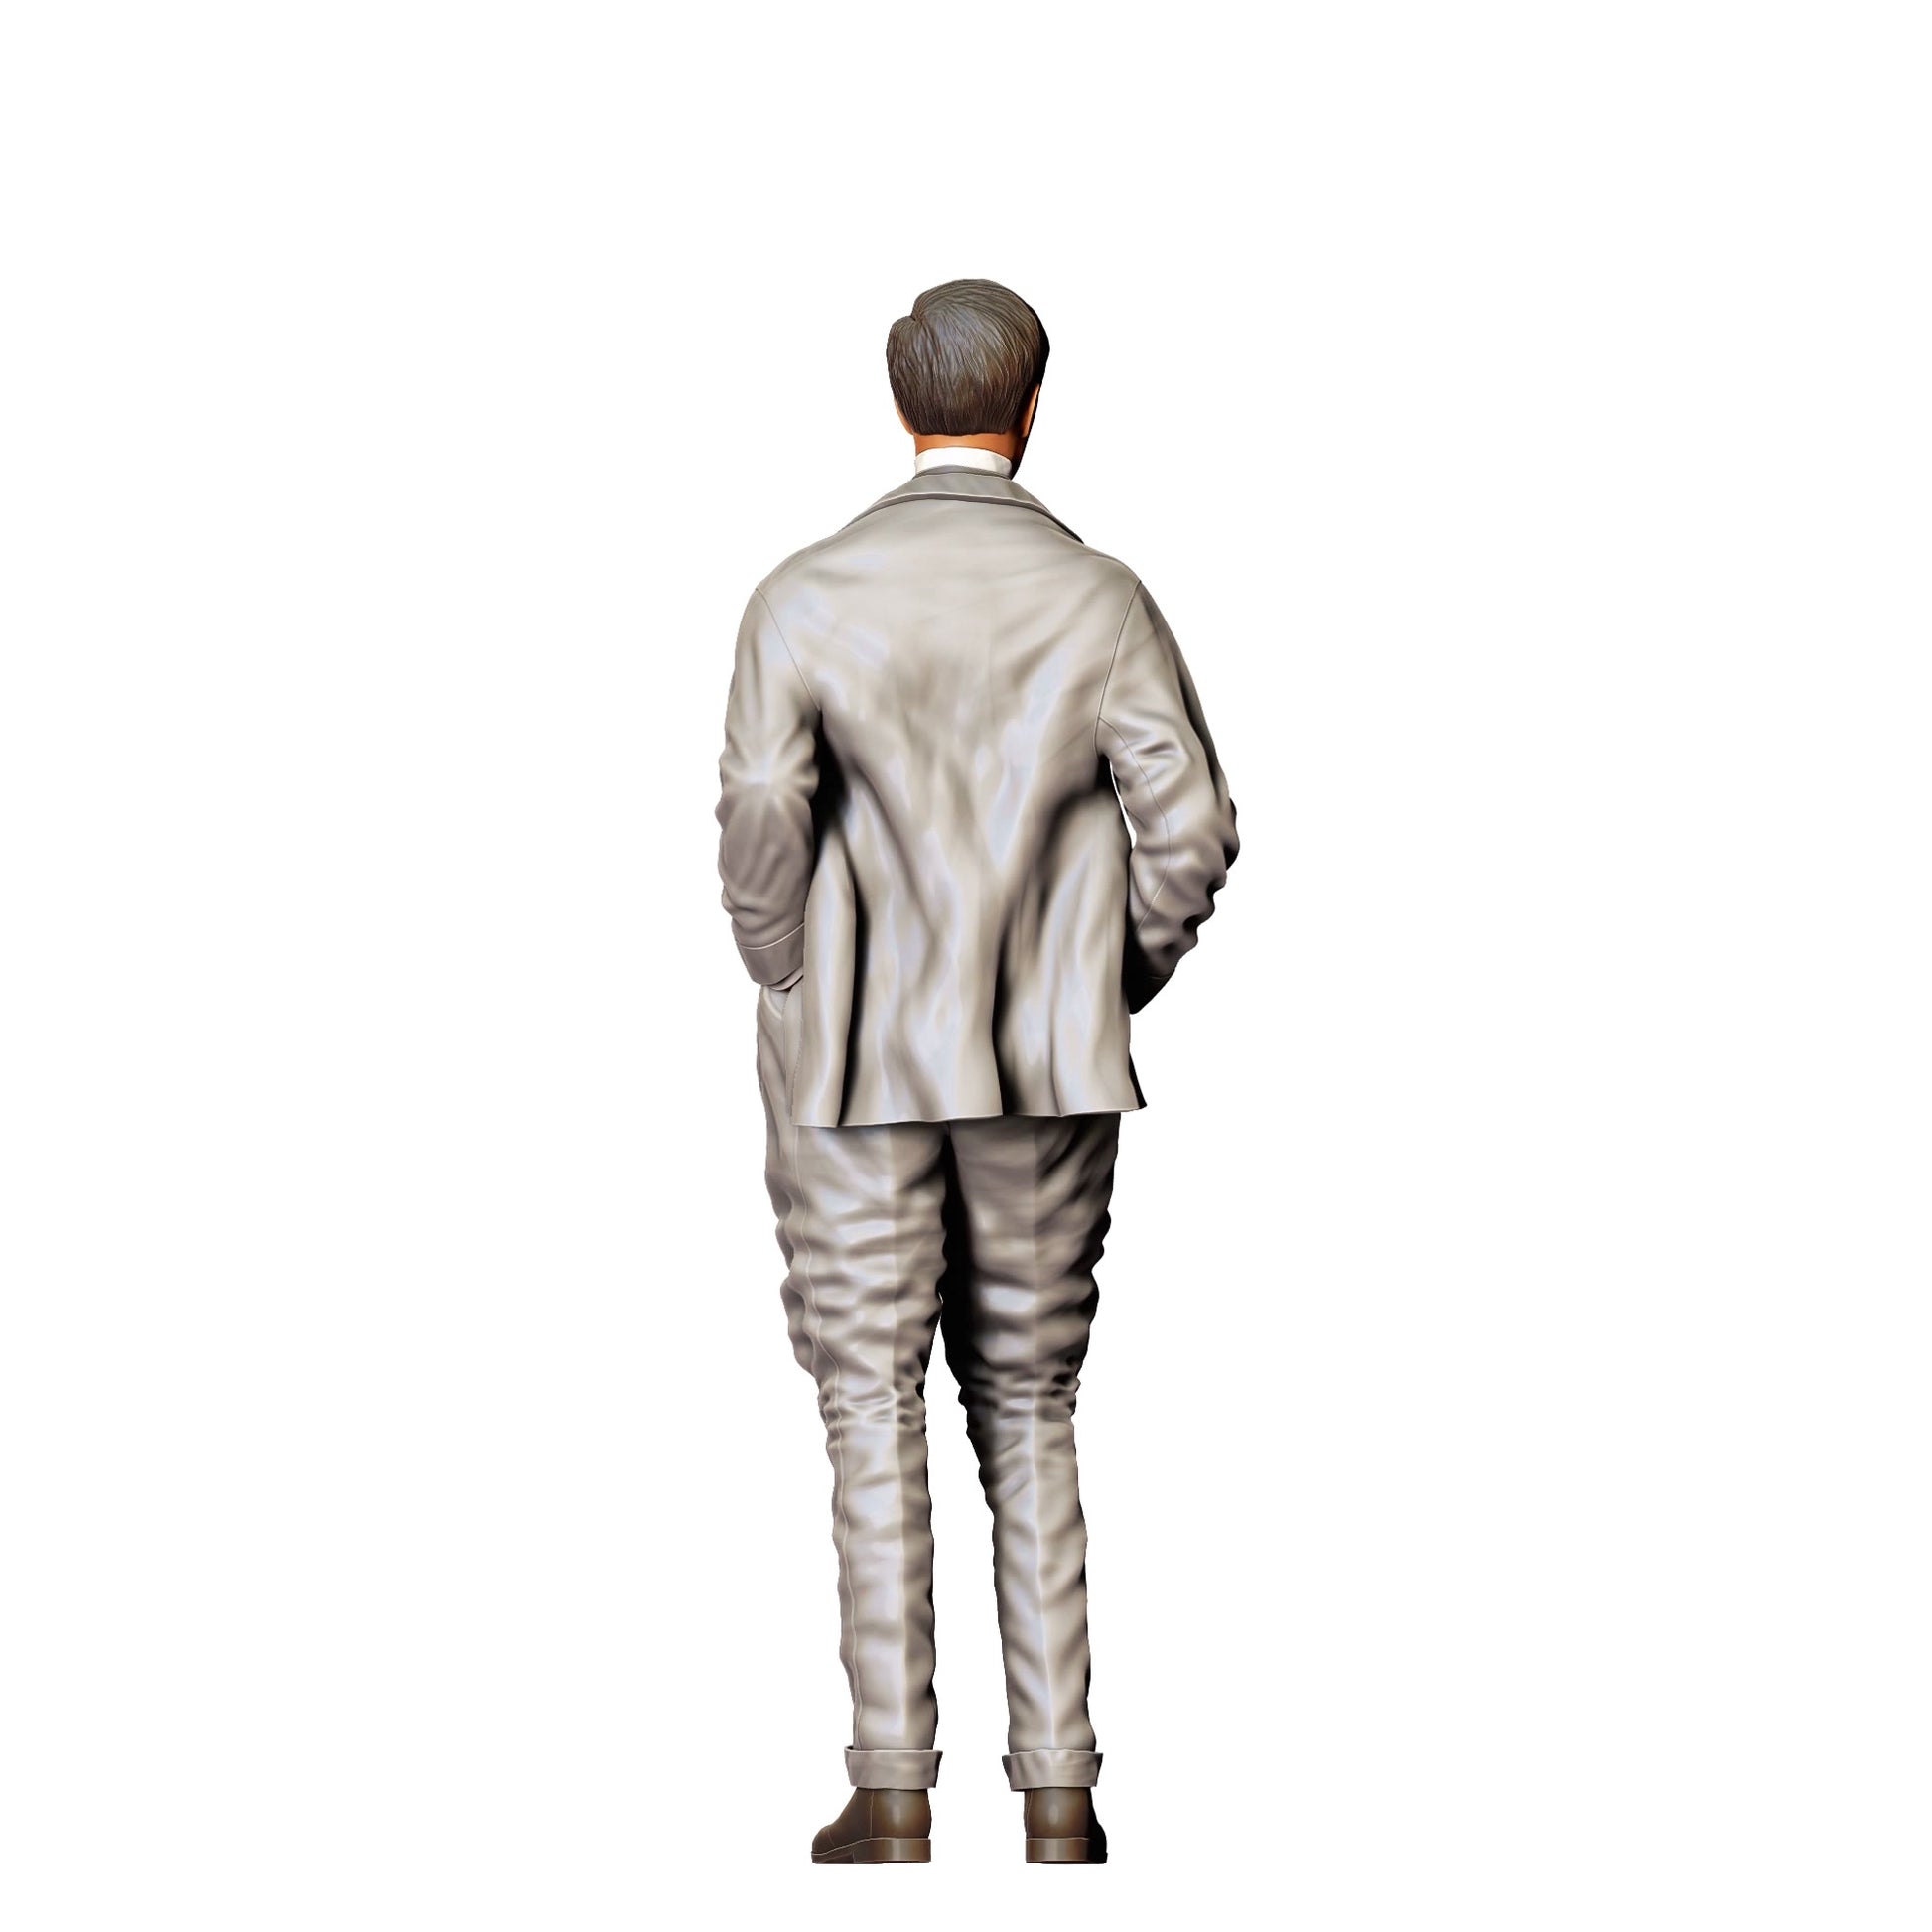 Diorama Modellbau Produktfoto 0: Altmodischer Mann mit Anzug (Ref. Nr. 305)